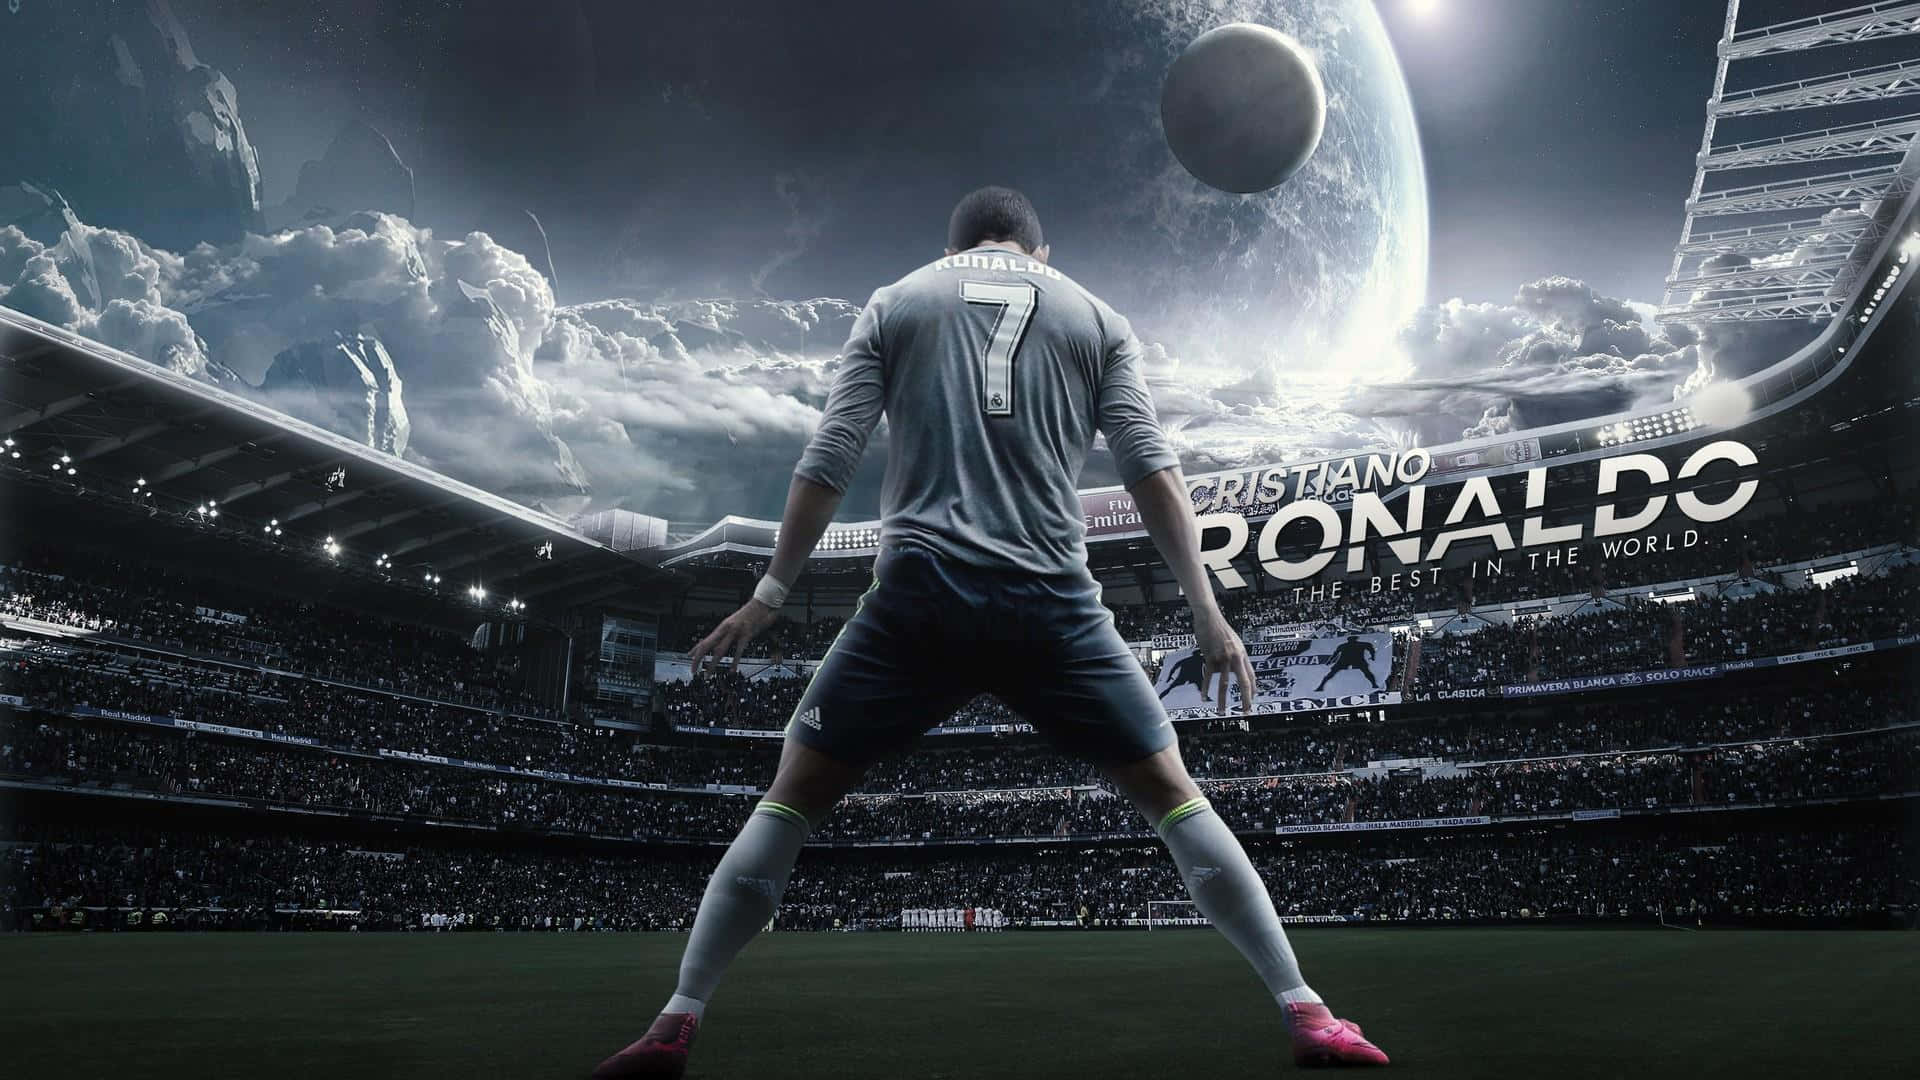 Iconicocalciatore Cristiano Ronaldo Che Mostra La Sua Abilità Atletica.